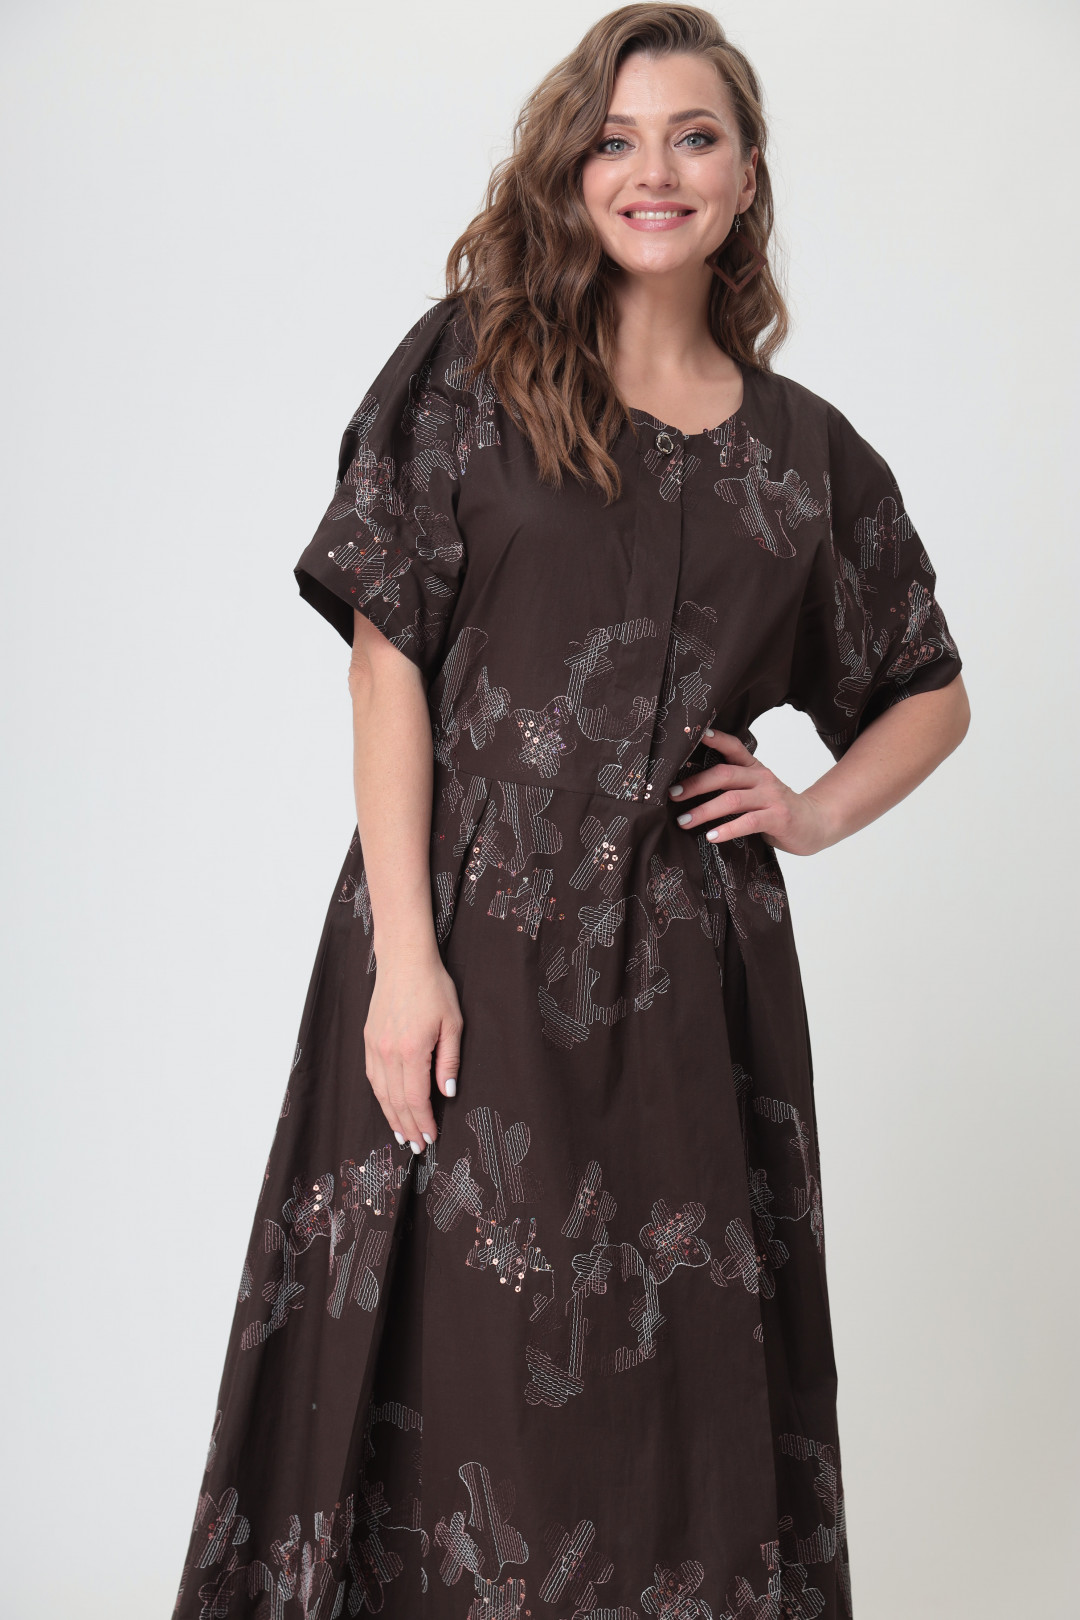 Платье ANASTASIA MAK 1042 коричневый